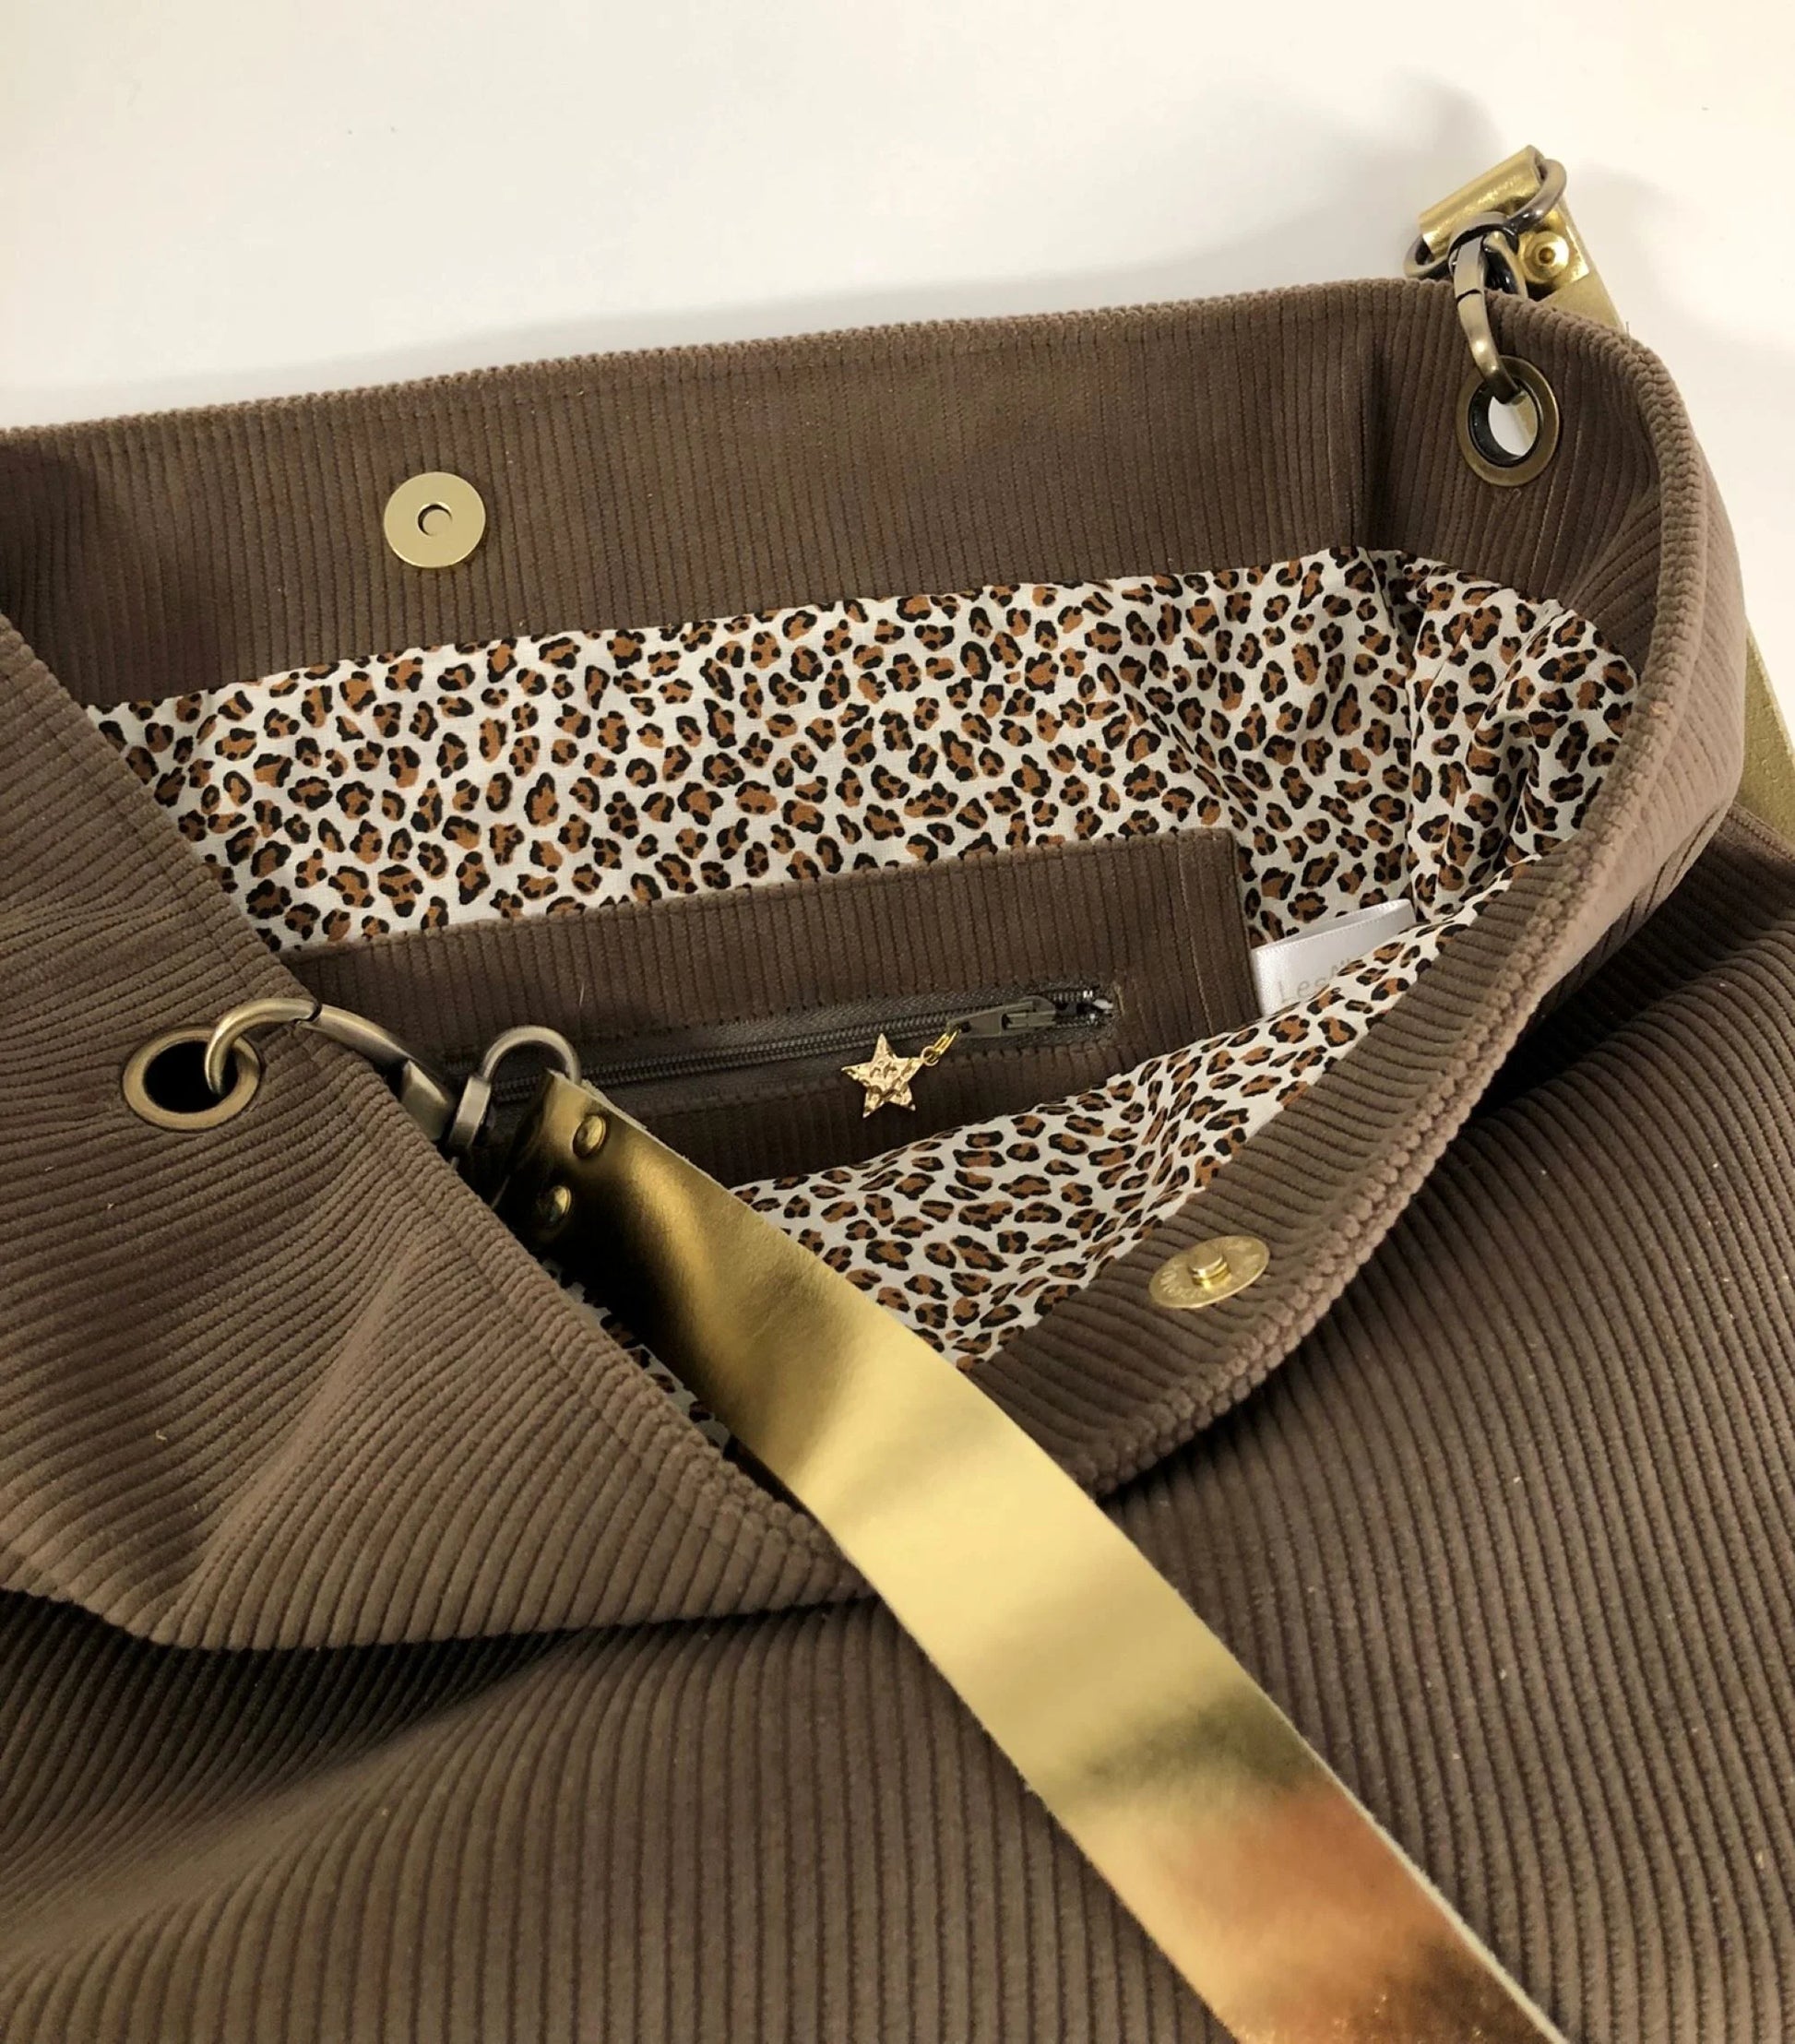 La poche intérieure zippée du sac hobo en velours côtelé marron chamois et son anse en cuir doré